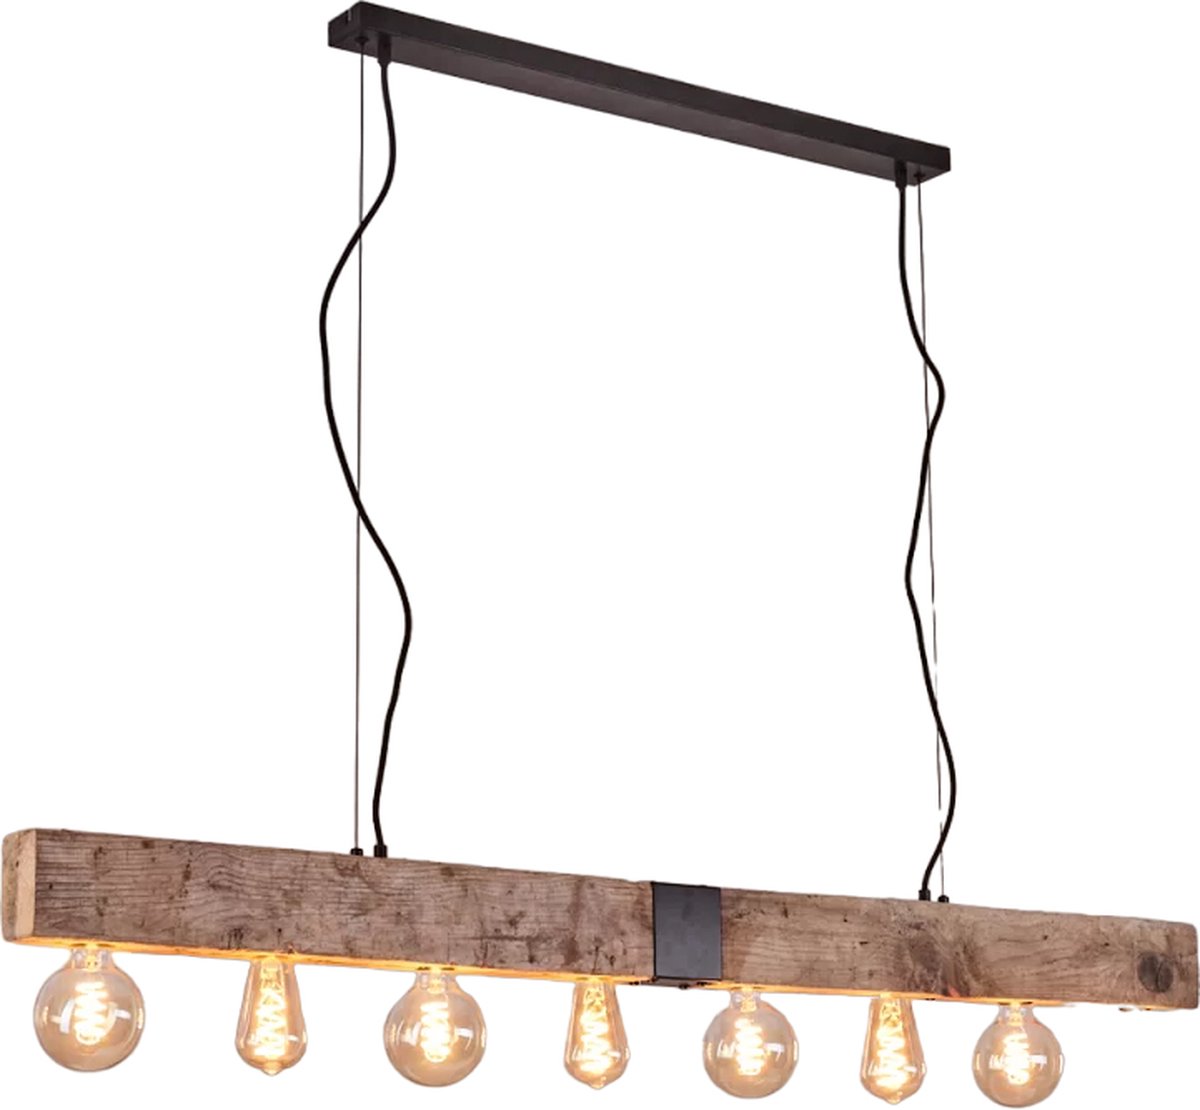 Deveal Hanglamp Hout 8 lichtbronnen, Natuurlijke kleur hout/metaal in lichtbruin/zwart, rechthoekige vintage hanglamp in industriële stijl, 8 lampen, 8 x E27, hoogte max. 120 cm, zonder lampen